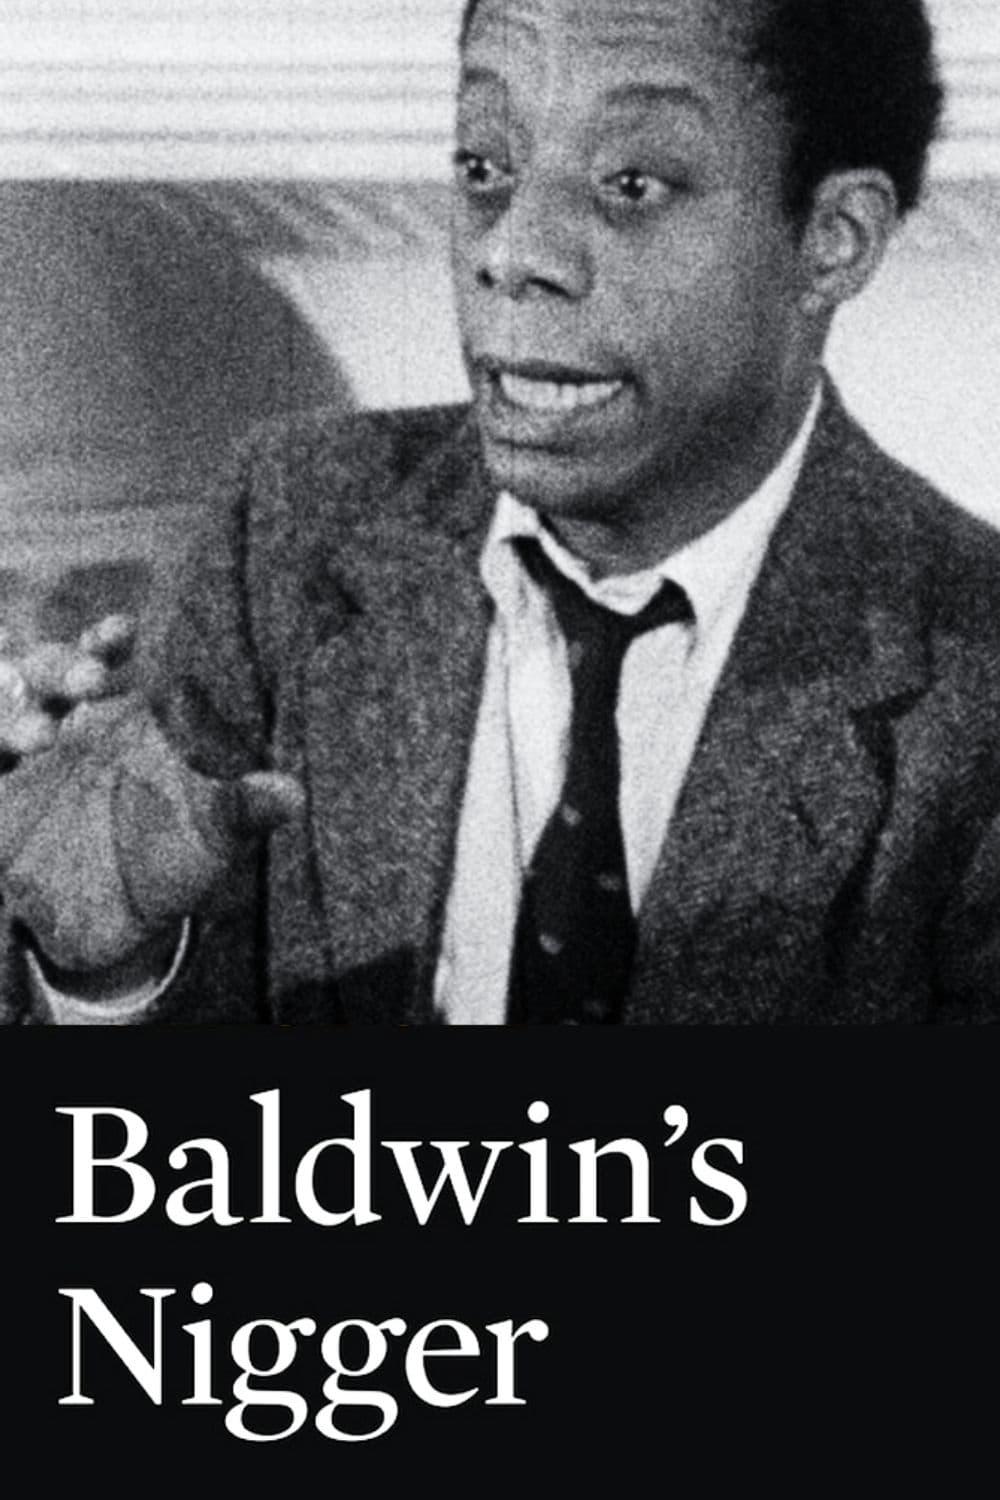 Baldwin's Nigger poster